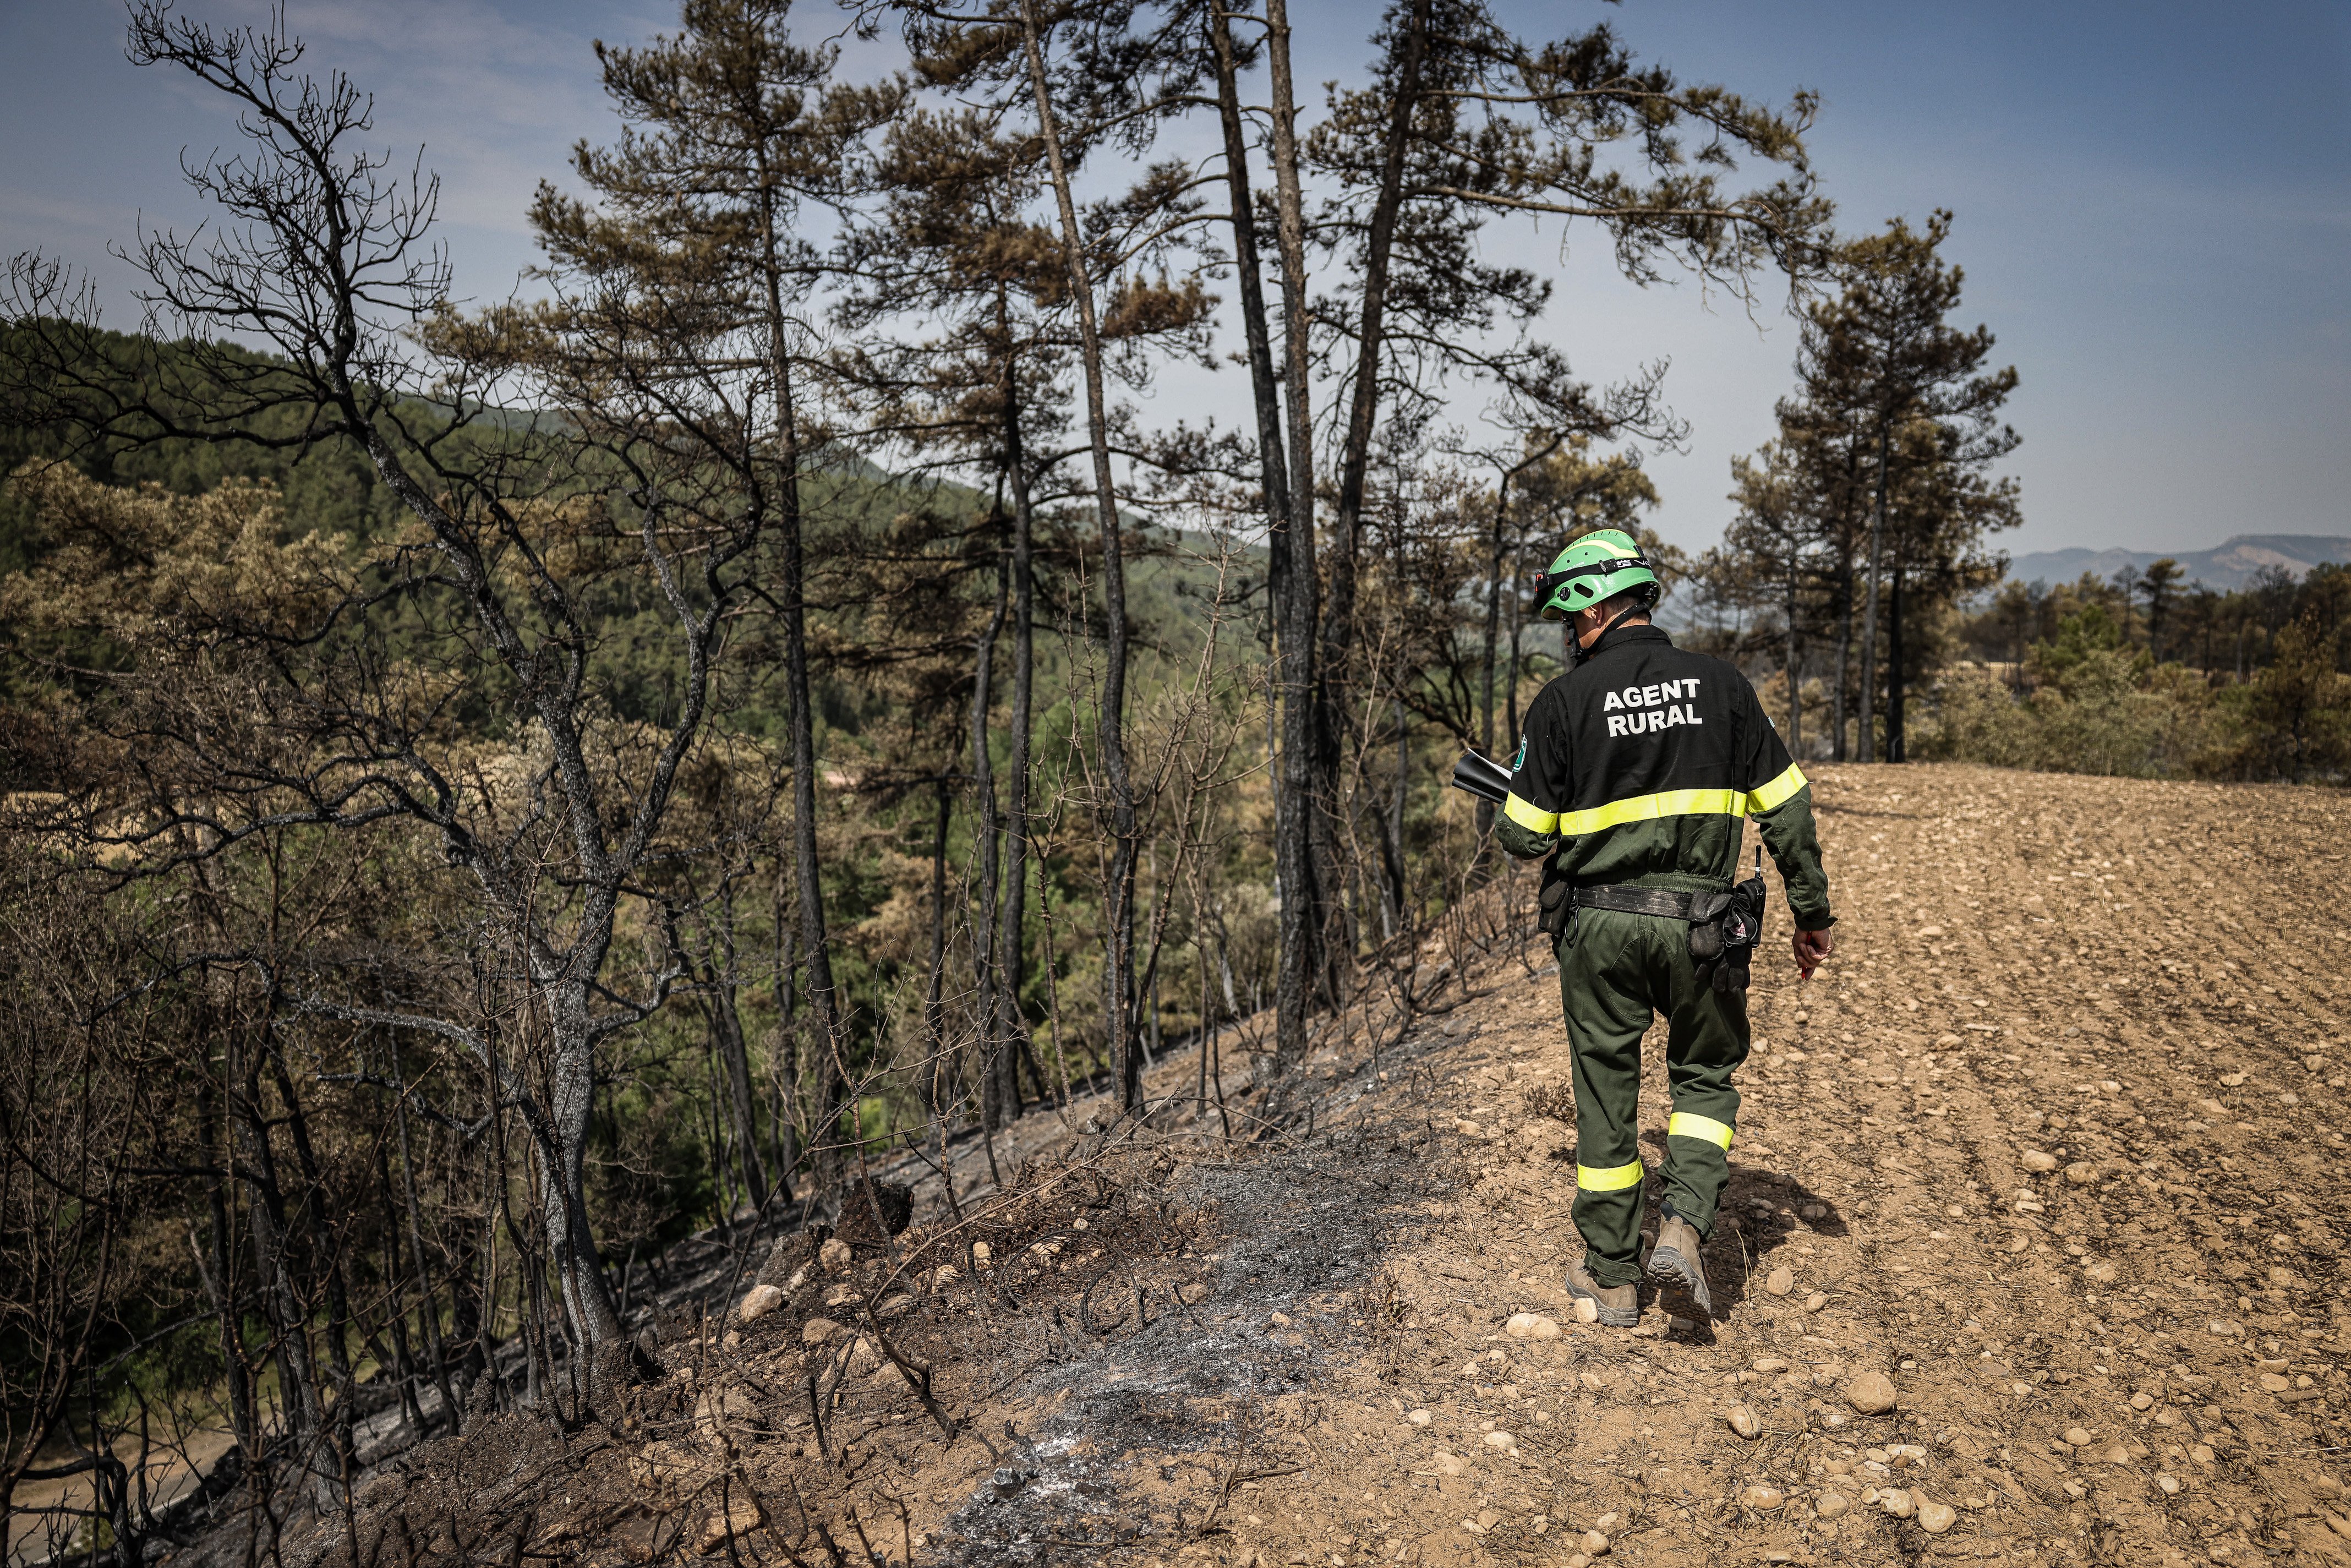 Pins morts i sureres decaigudes: 66.500 hectàrees de bosc afectades per la sequera a Catalunya